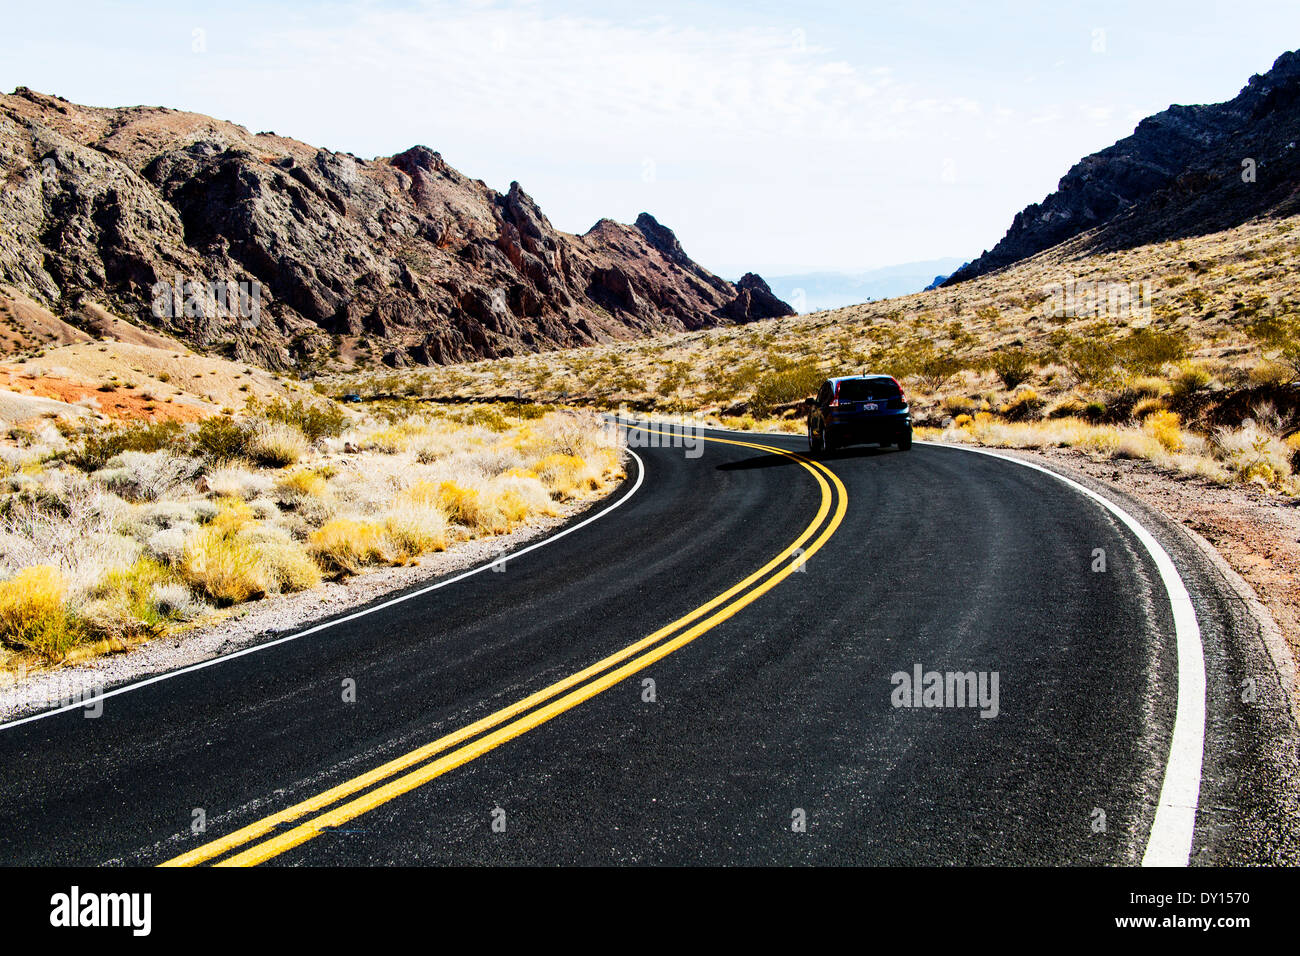 Asphaltierte Straße in Wüste Nevada USA Vereinigte Staaten von Amerika Stockfoto